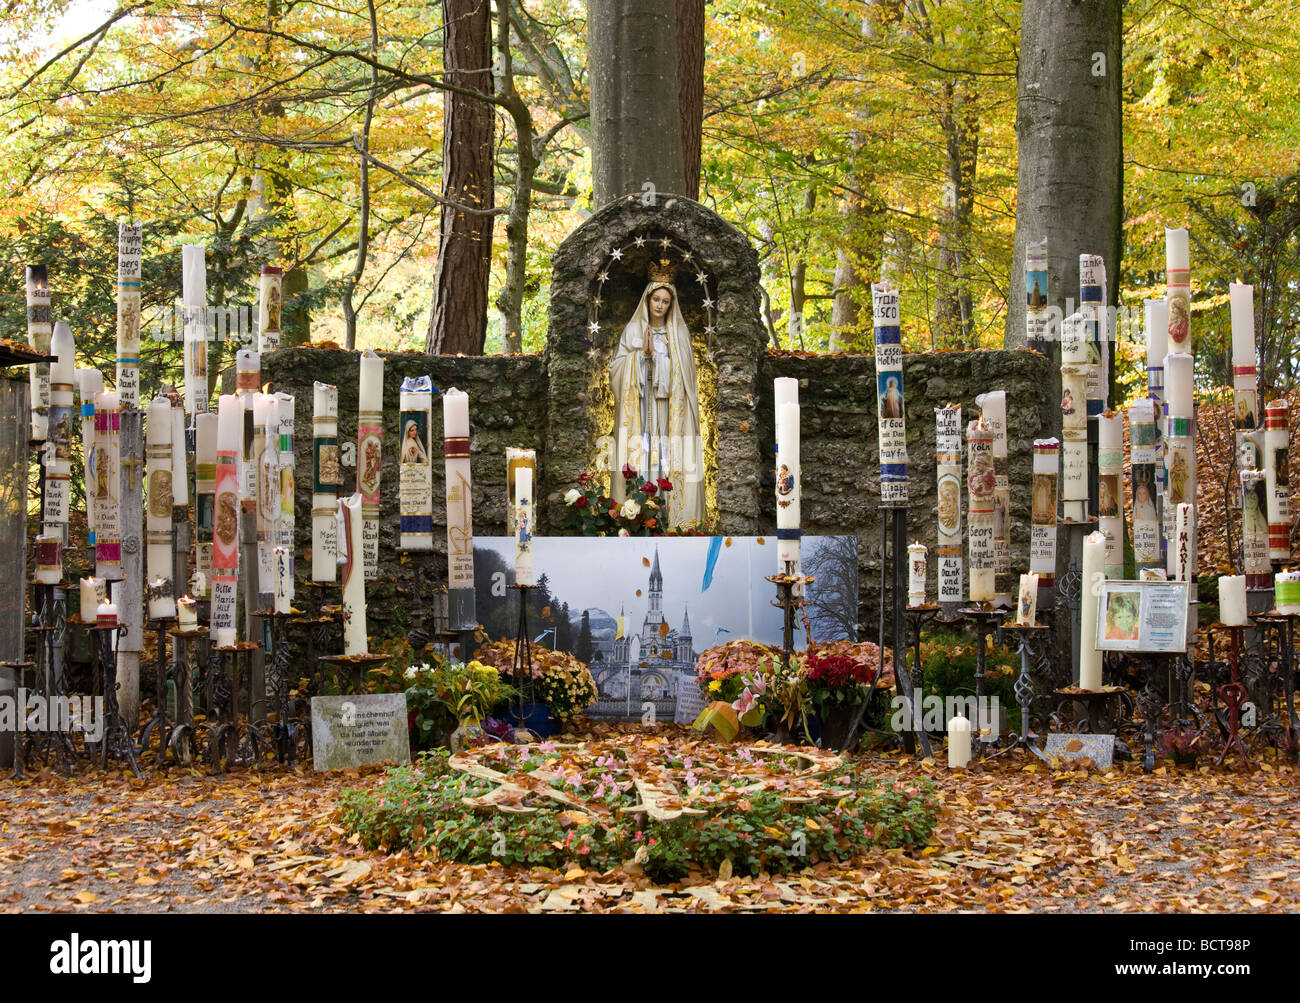 Maria pietà, pellegrinaggio cattolico sito, miracolosa immagine della dolorosa Madre di Dio, candele, Ziemetshausen, in den Stauden, Sw Foto Stock